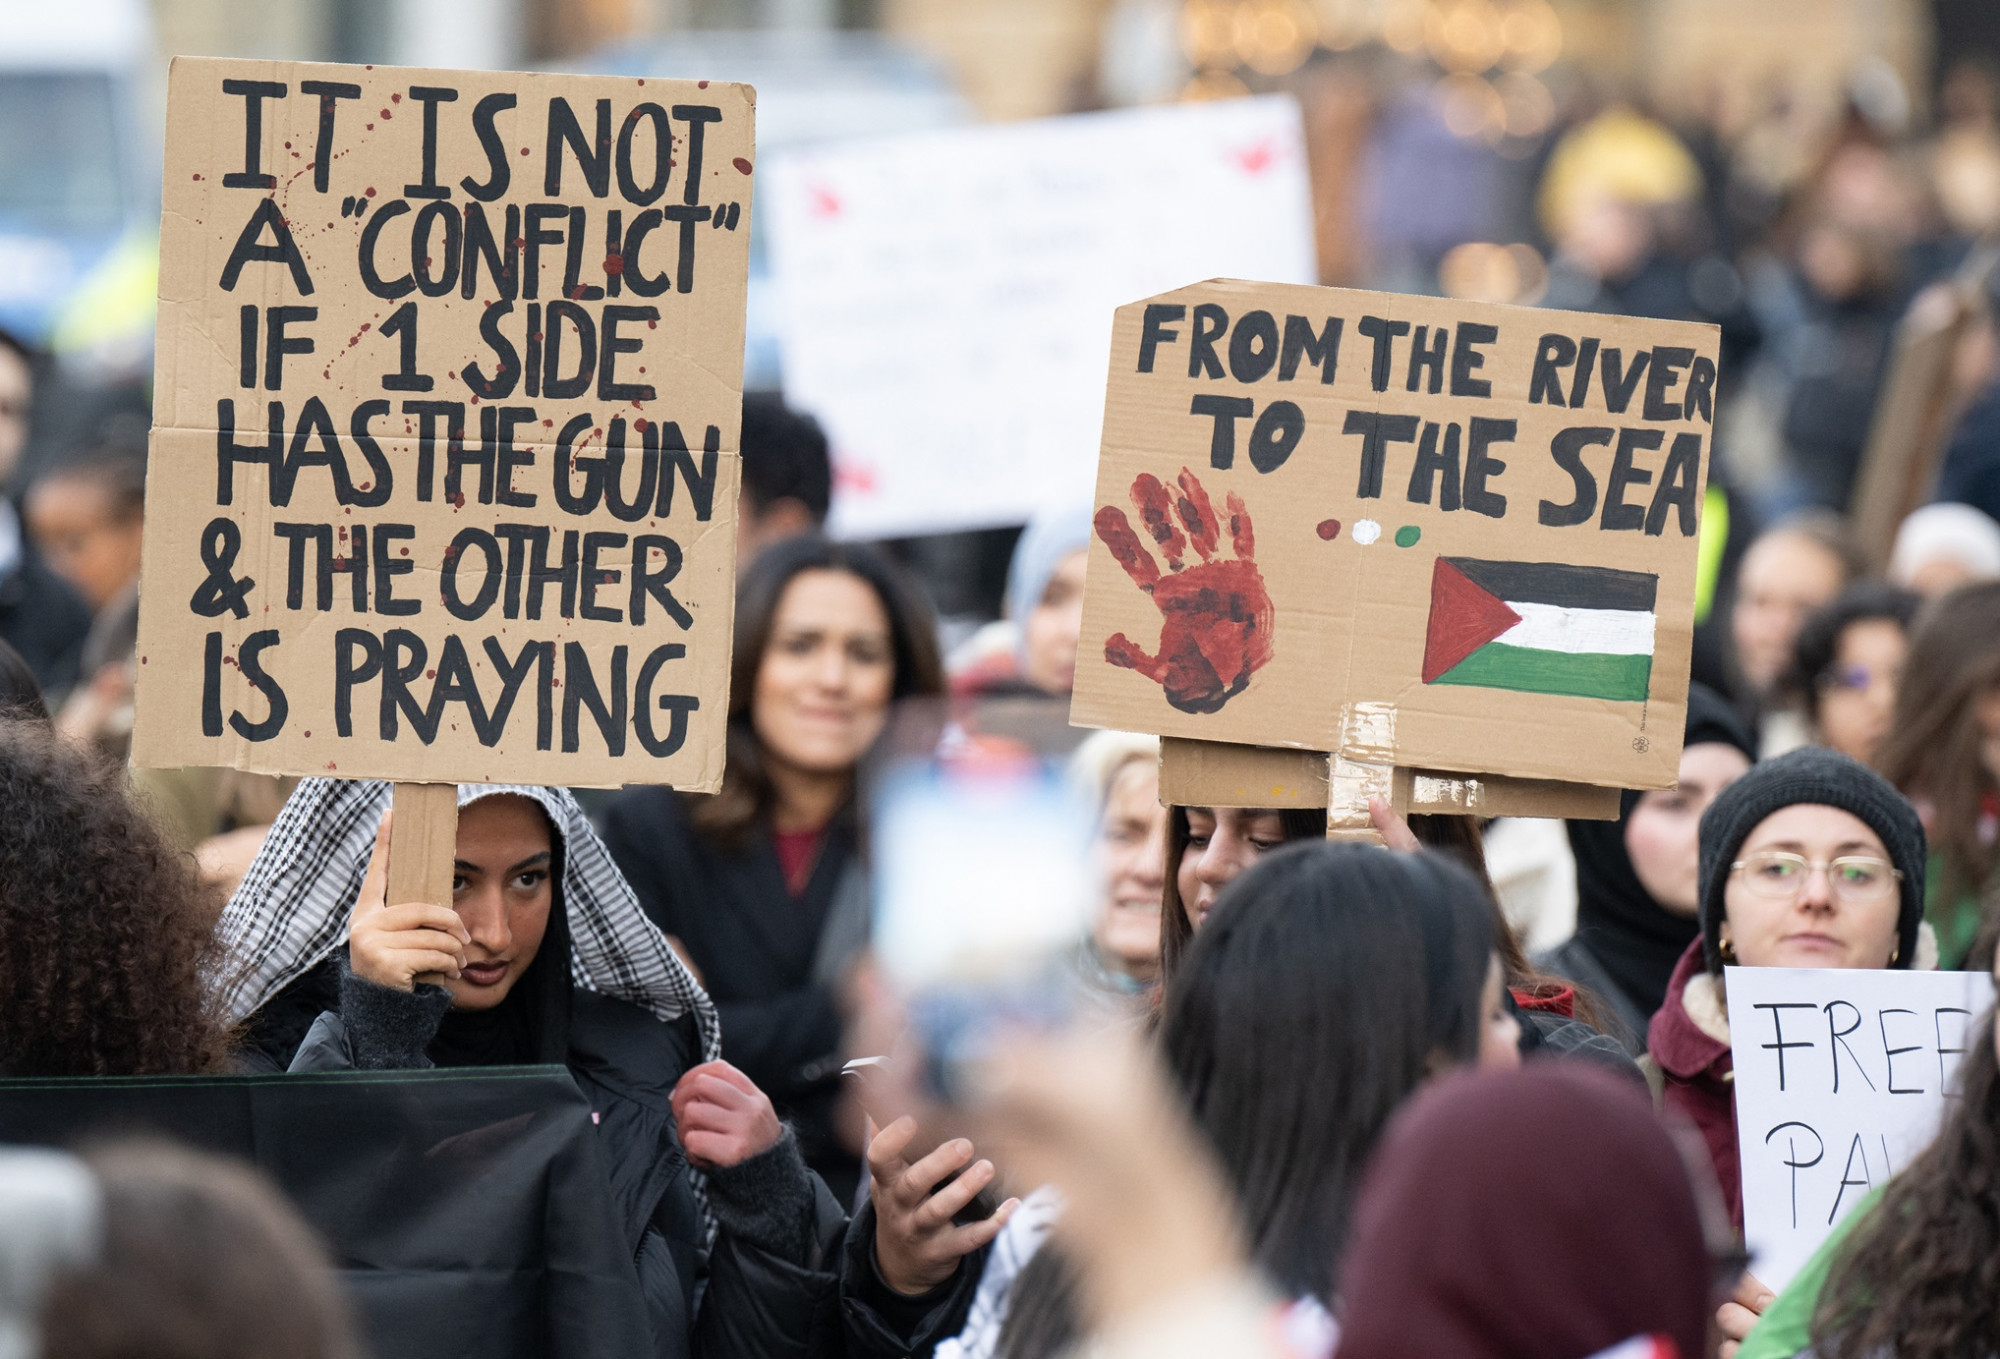 A londoni rendőrség részletes magatartási normákat szabott a palesztinpárti tüntetés résztvevőinek